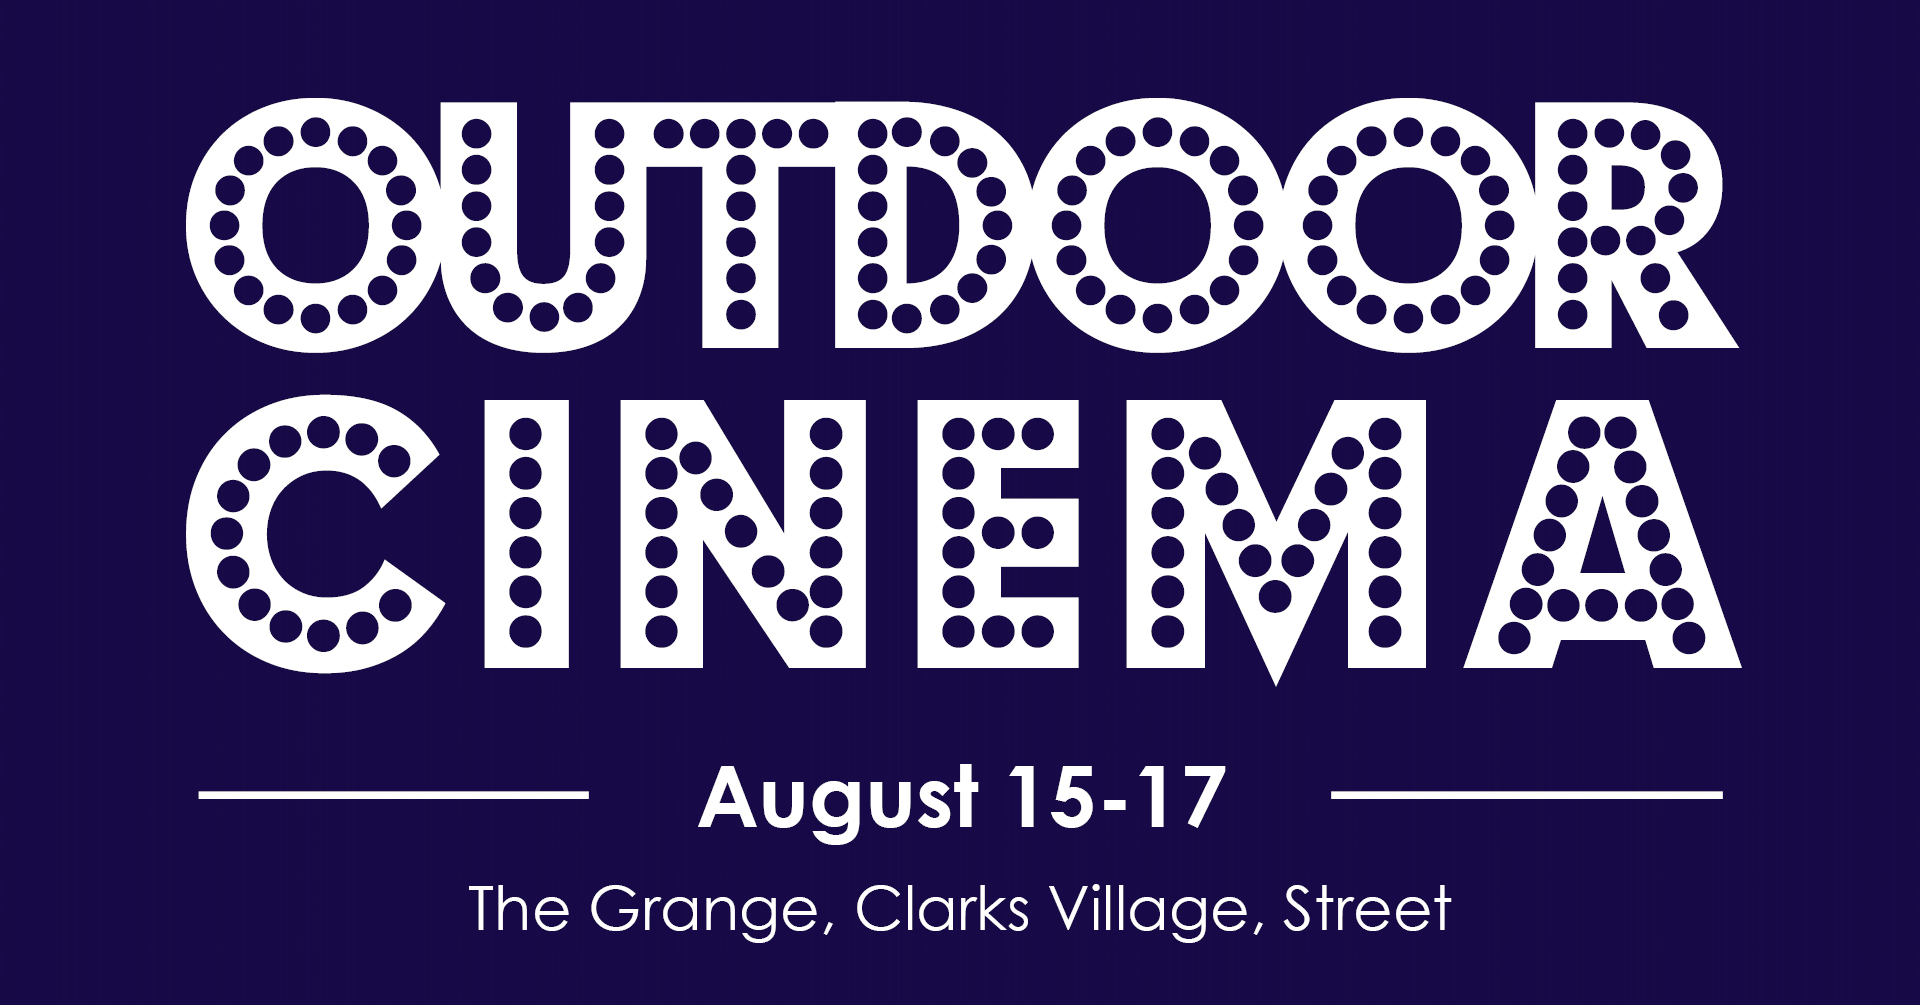 clarks village outdoor cinema